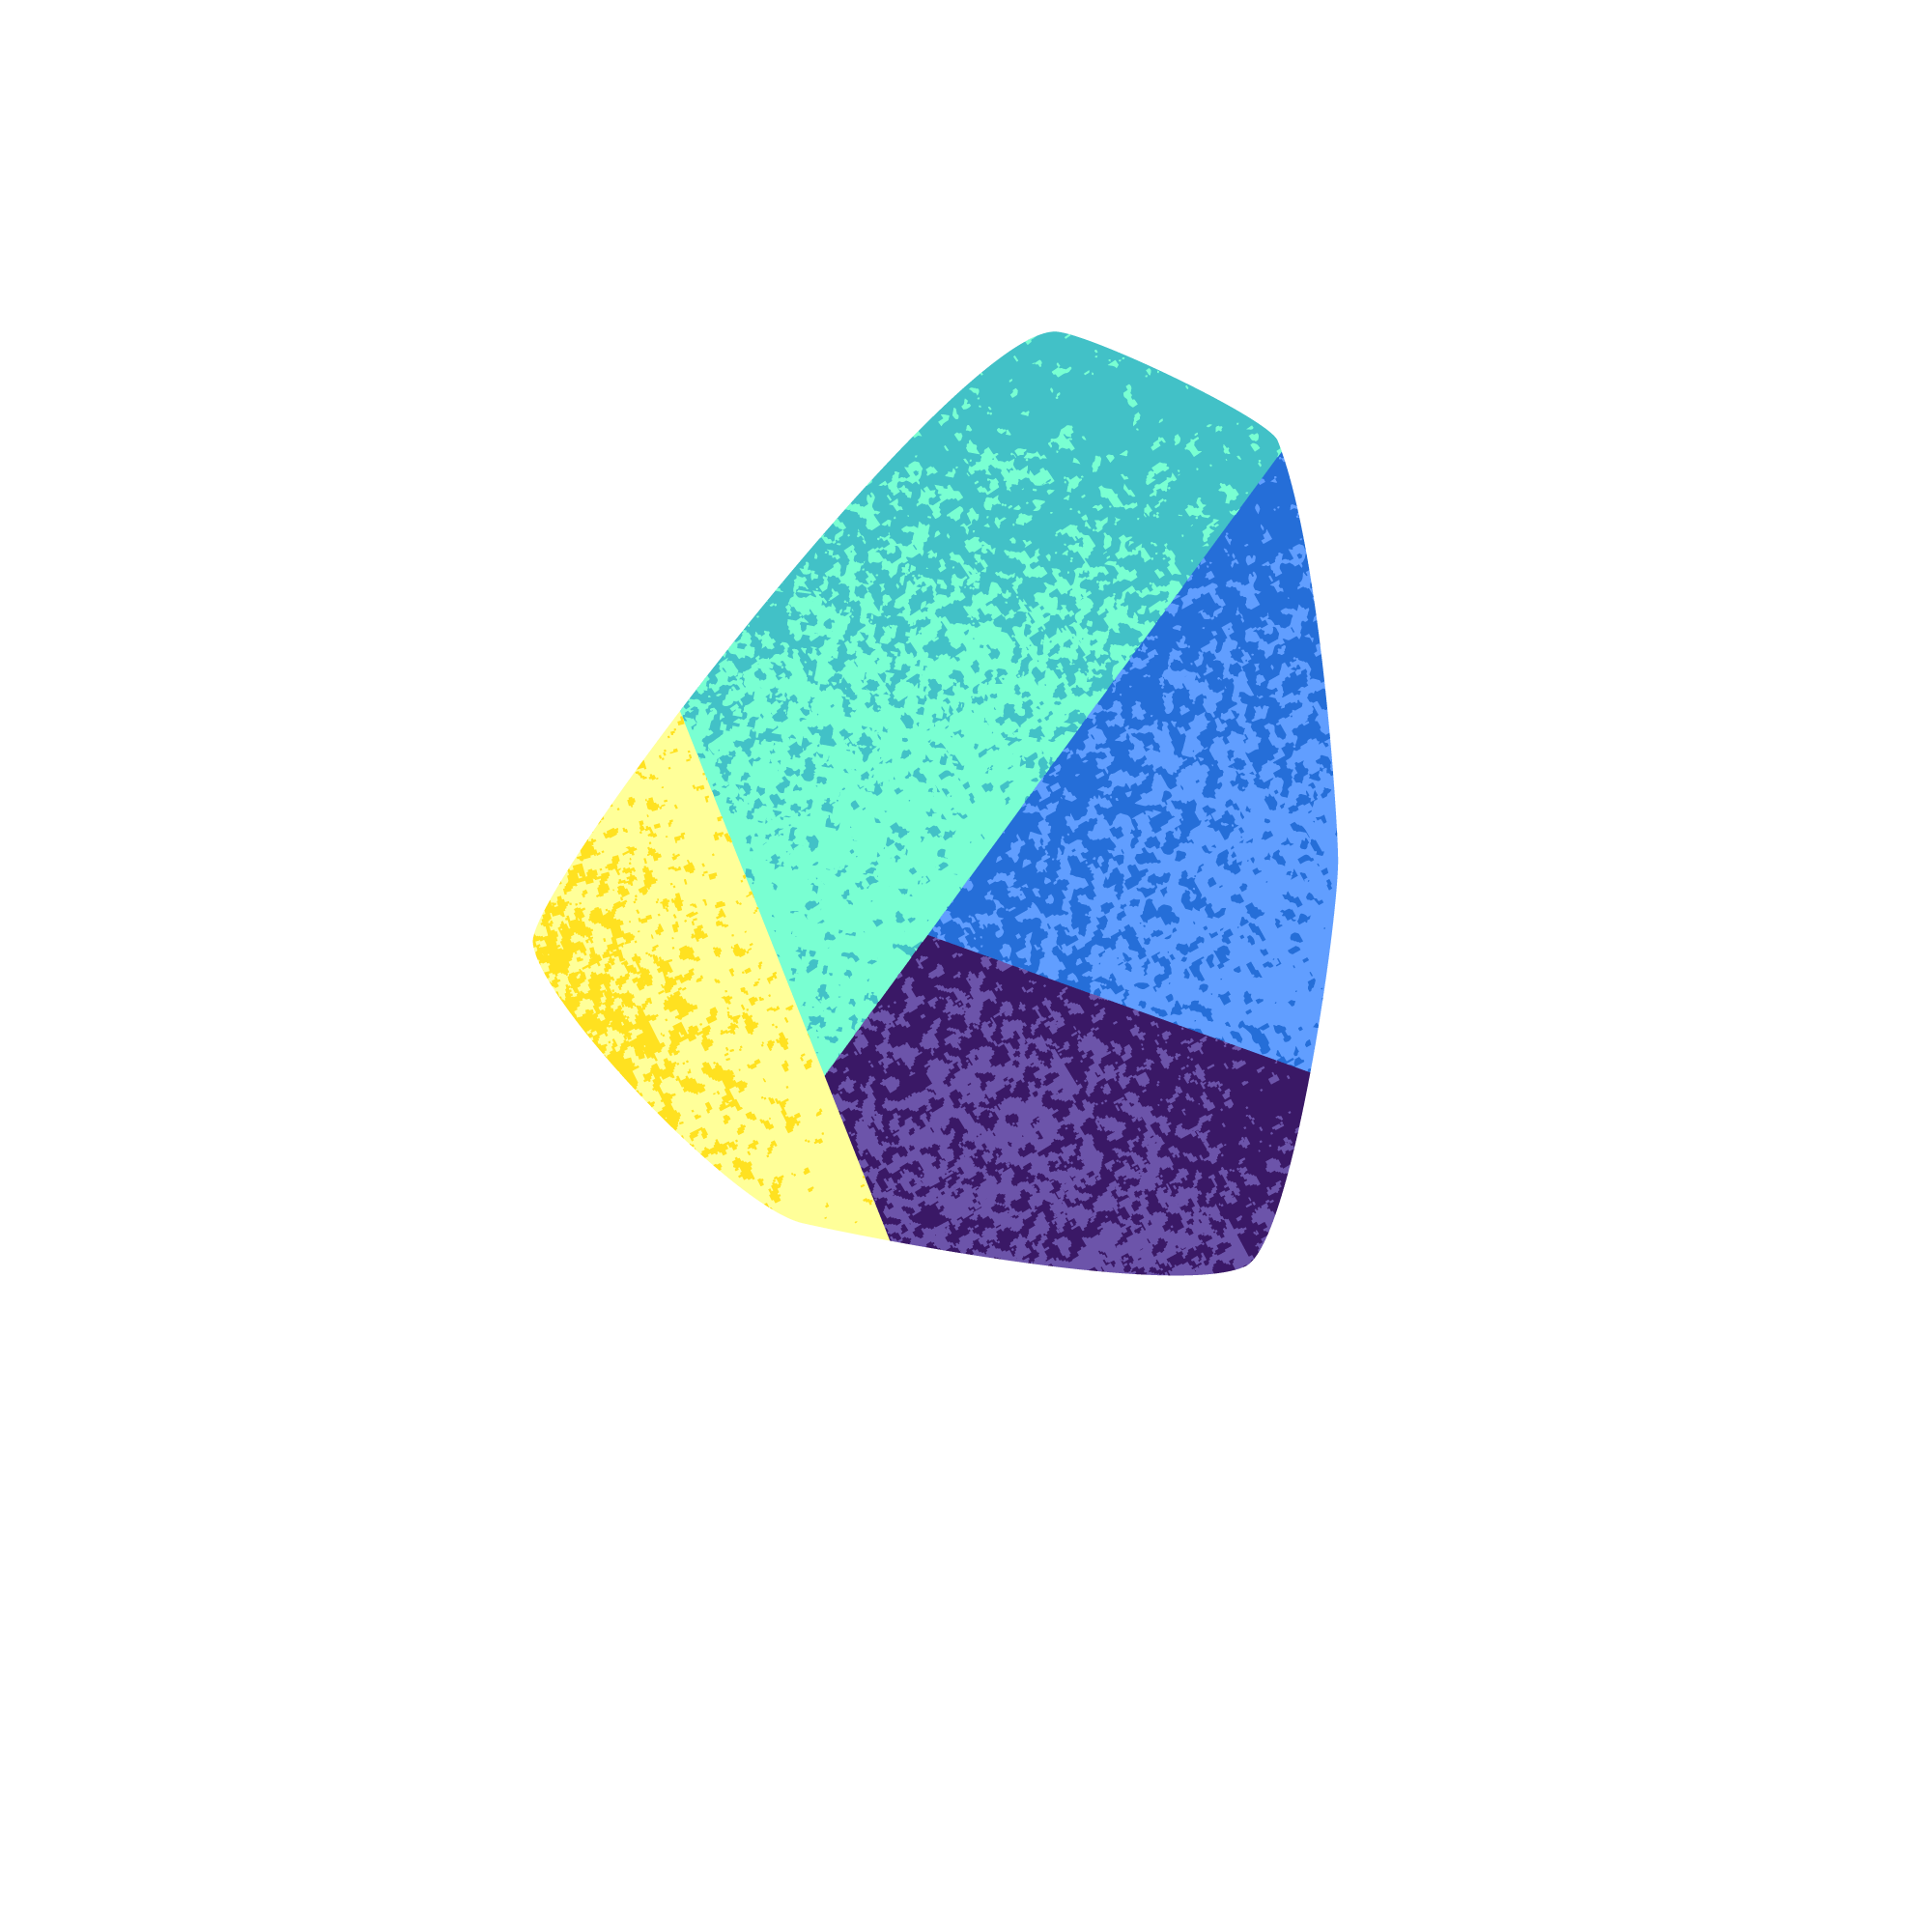 Klippe Learning